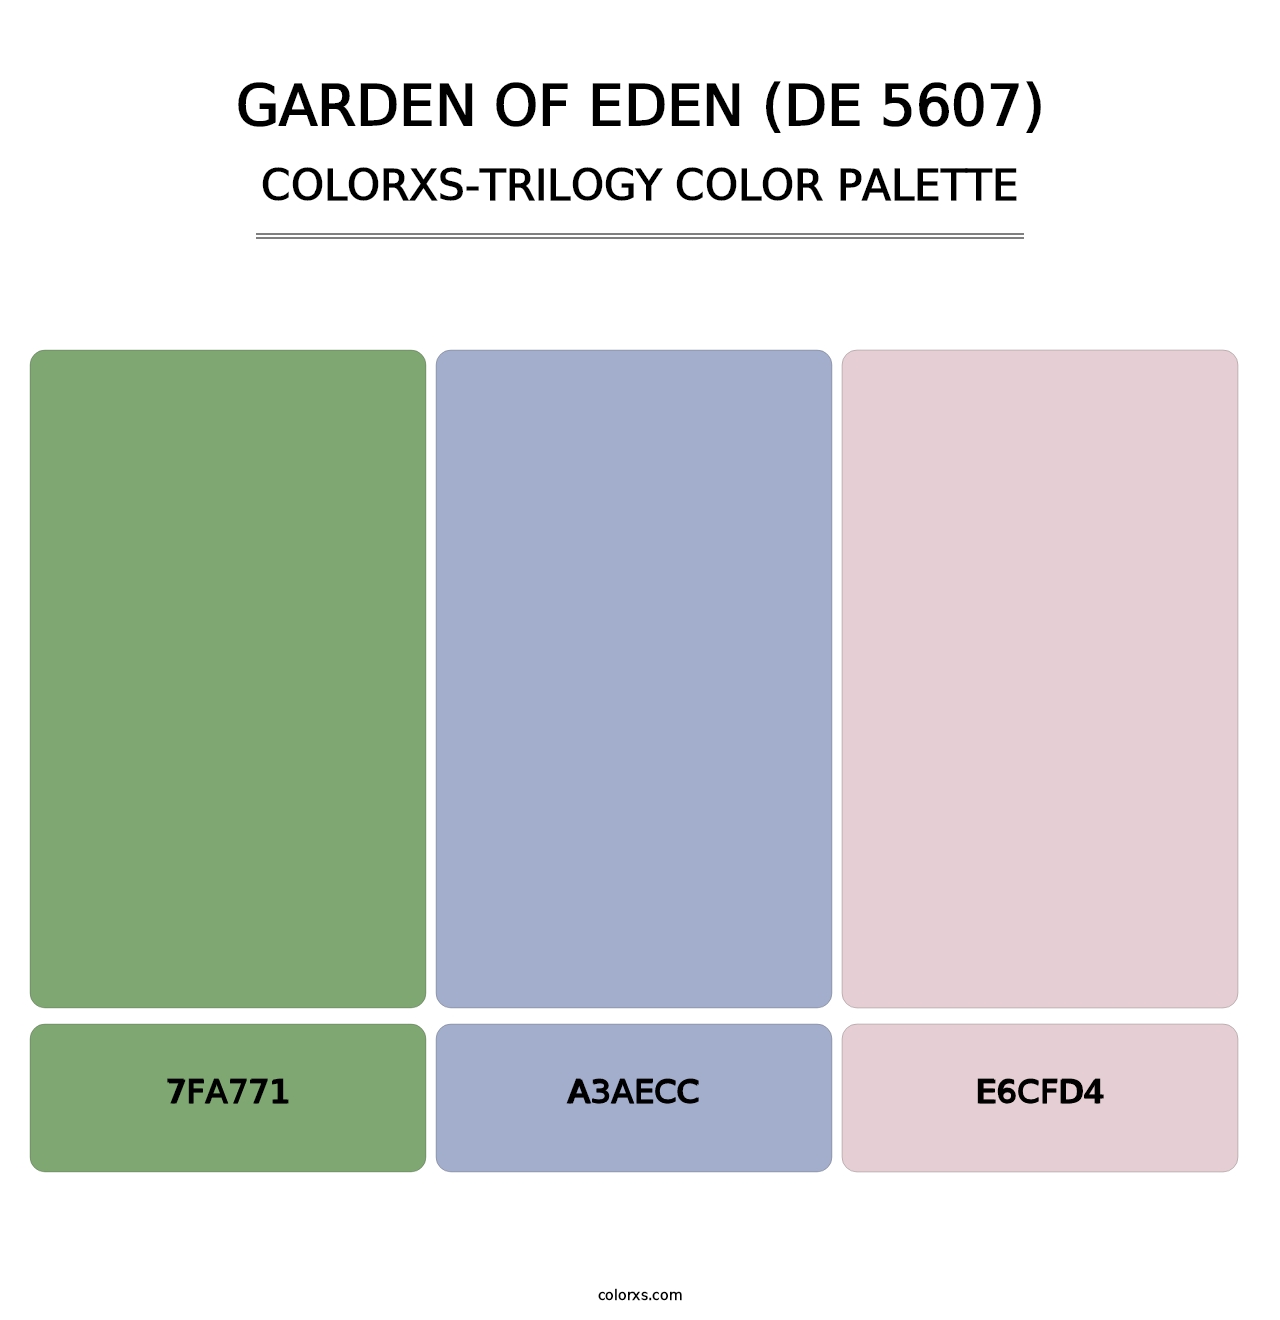 Garden of Eden (DE 5607) - Colorxs Trilogy Palette